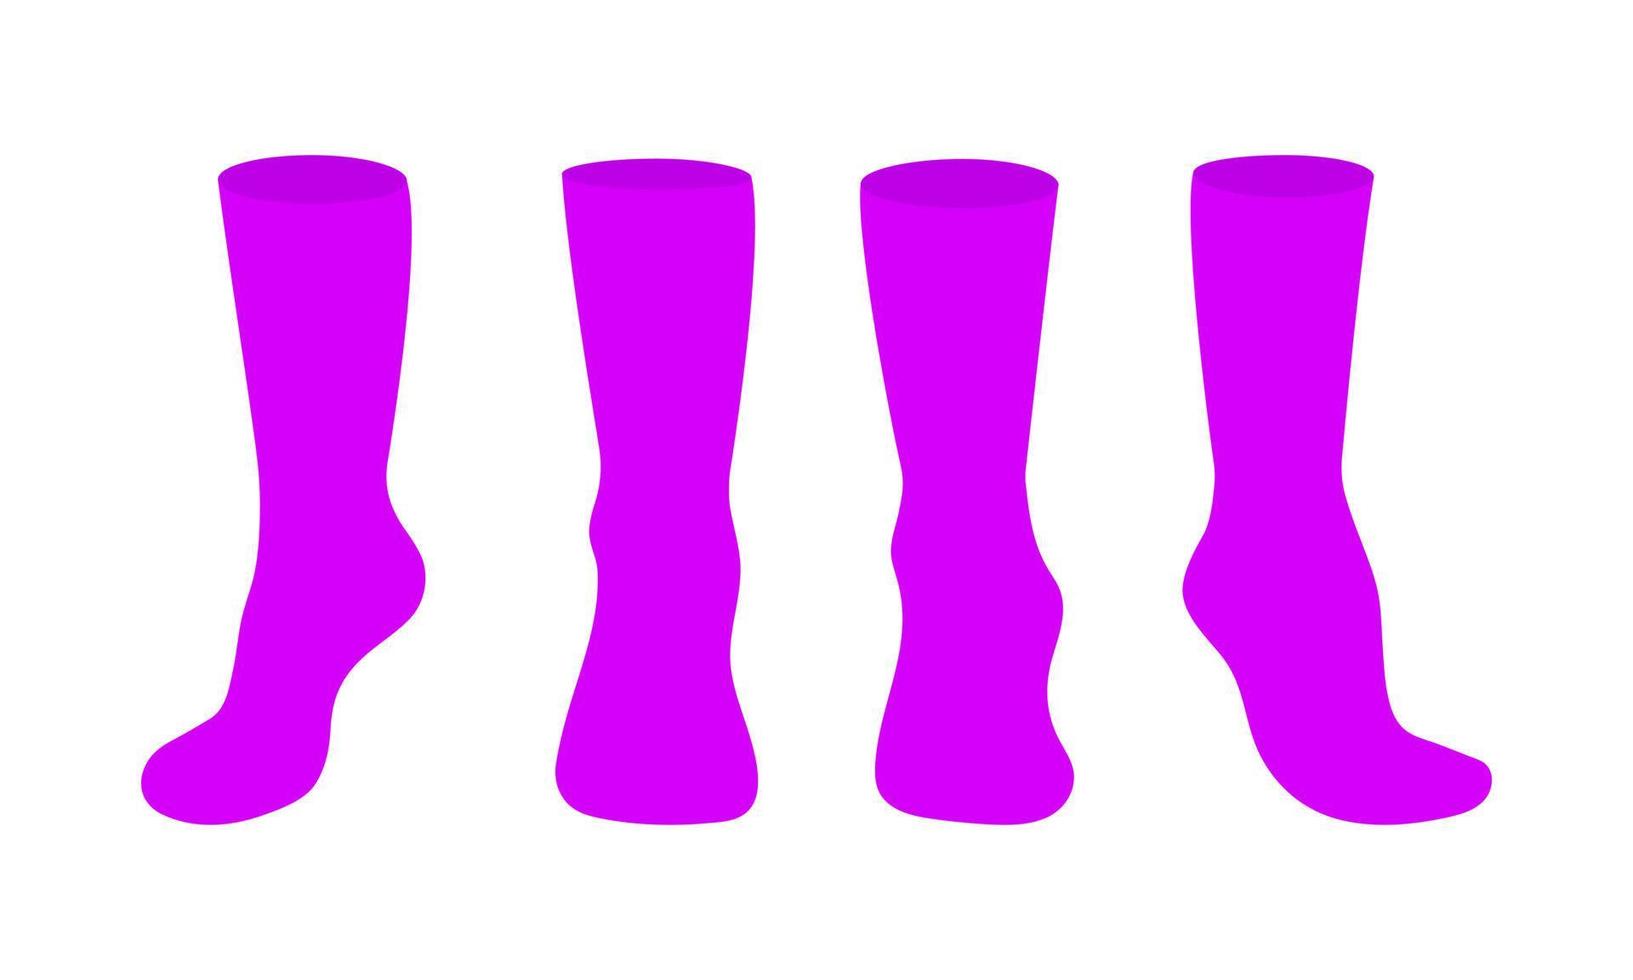 Purple socks template mockup flat style design vector illustration set.